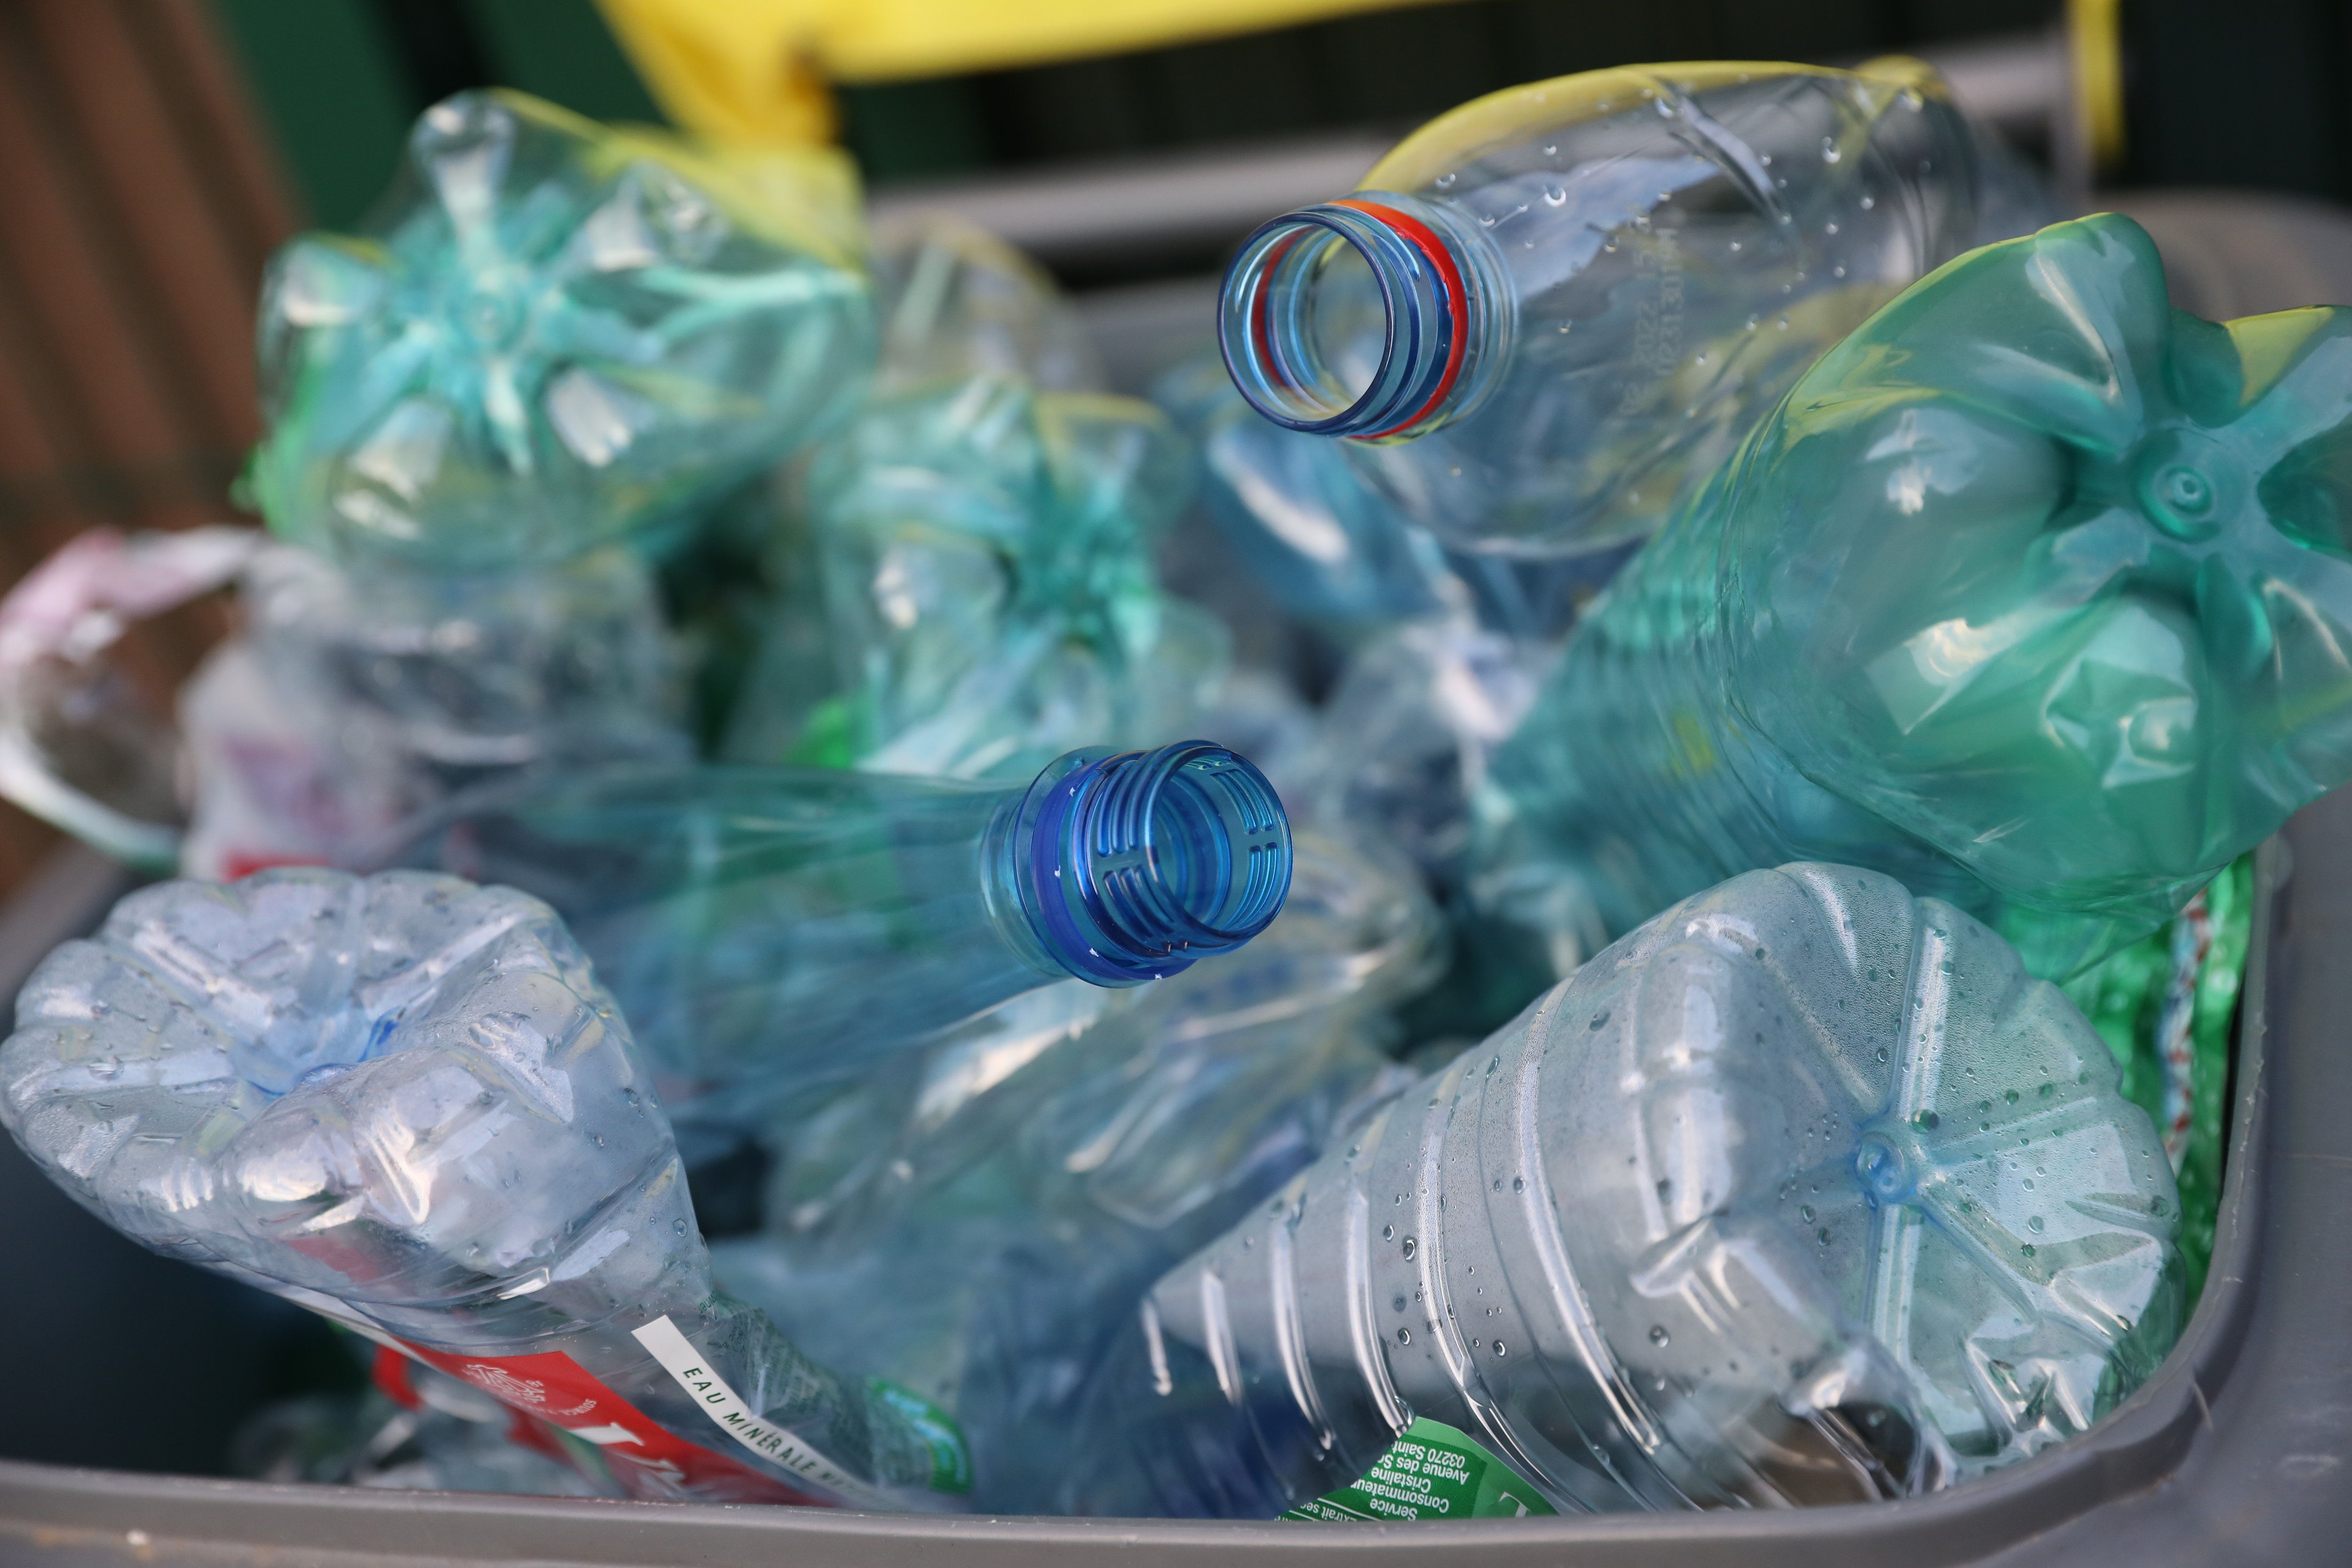 Danone indique que 70000 tonnes de bouteilles en plastique PET (polytéréphtalate d’éthylène) coloré sont mises sur le marché chaque année en France par l’ensemble des acteurs, et que leur « recyclage en de nouvelles bouteilles reste encore difficile aujourd’hui ». LP/Arnaud Journois